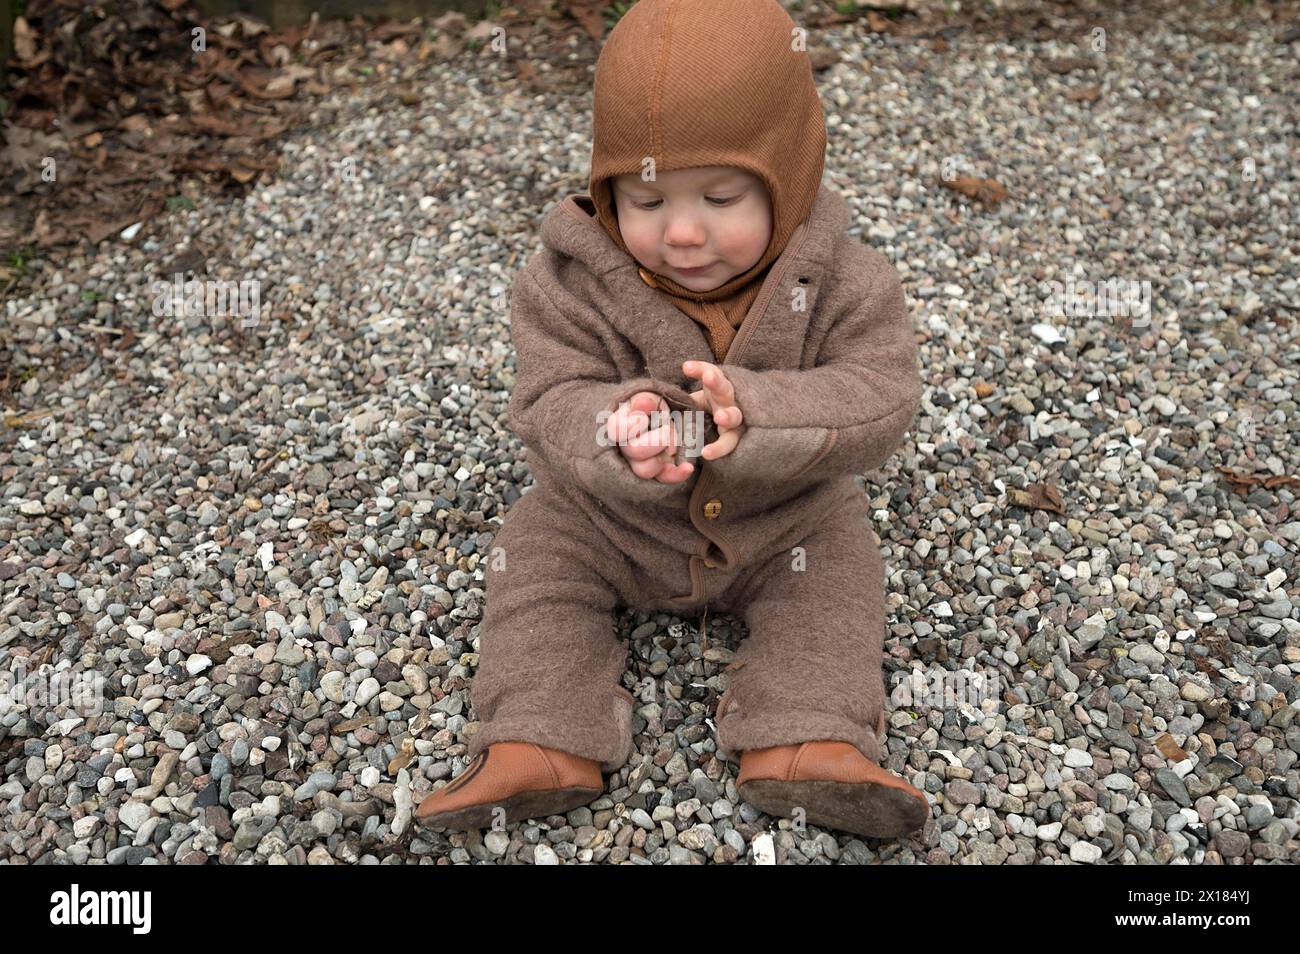 Kleines Kind, 8 Monate, warm eingewickelt, auf dem Kies sitzend und mit Steinen spielend, Mecklenburg-Vorpommern, Deutschland Stockfoto